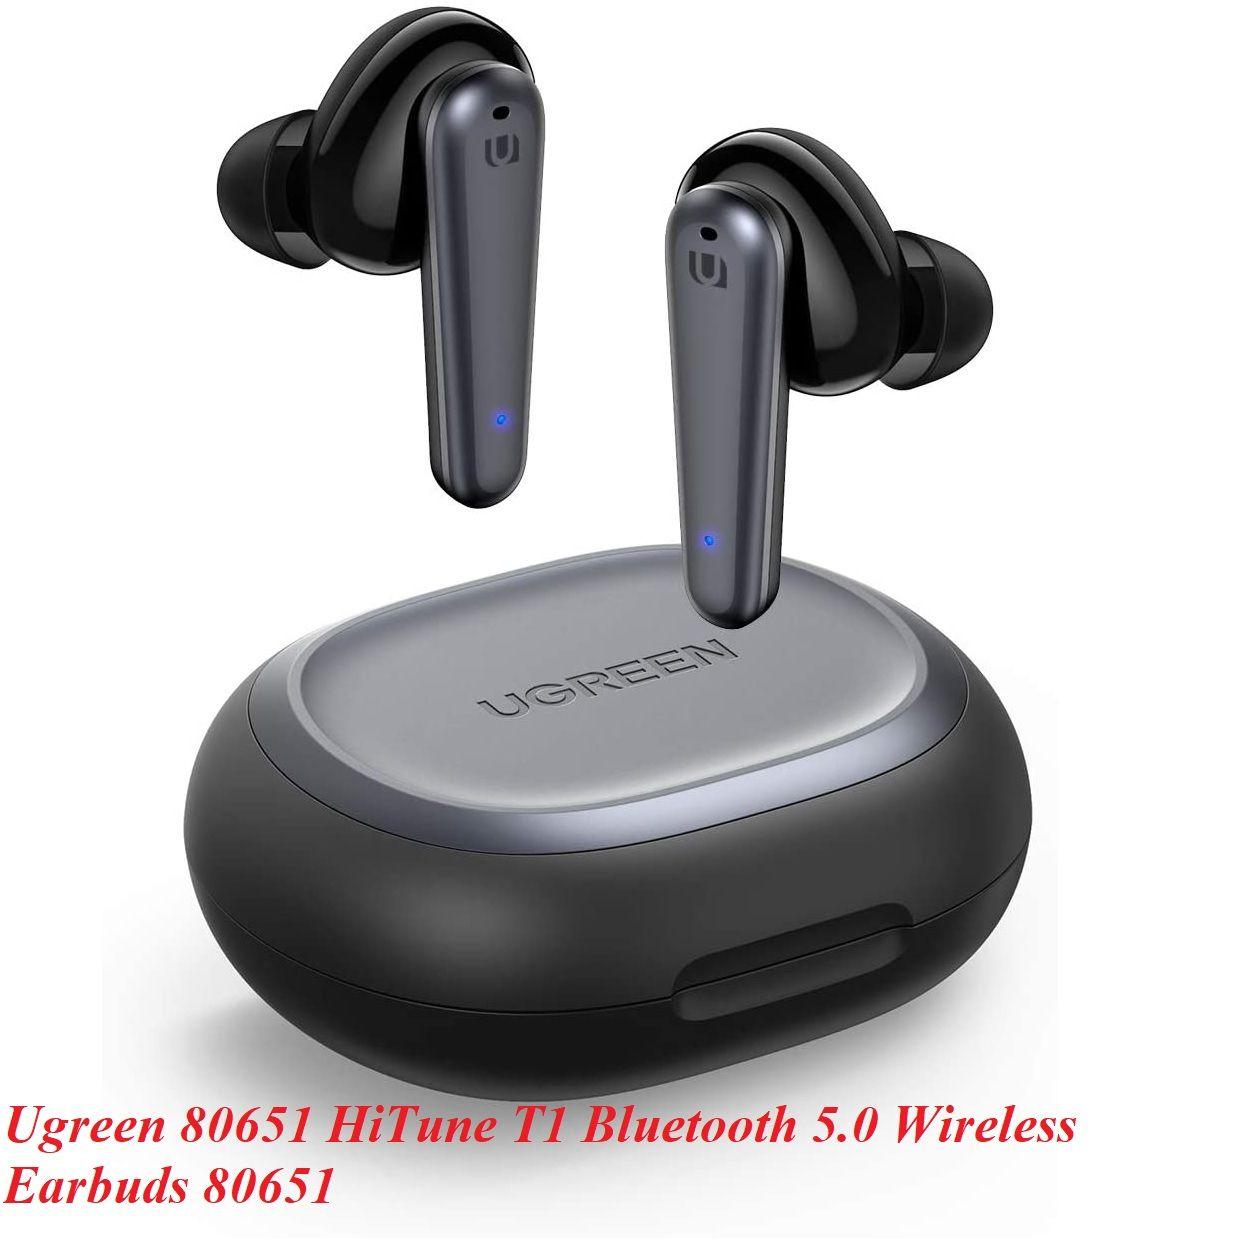 Ugreen UG80651WS111TK HiTune T1 Bluetooth 5.0 Tai nghe không dây màu đen - HÀNG CHÍNH HÃNG